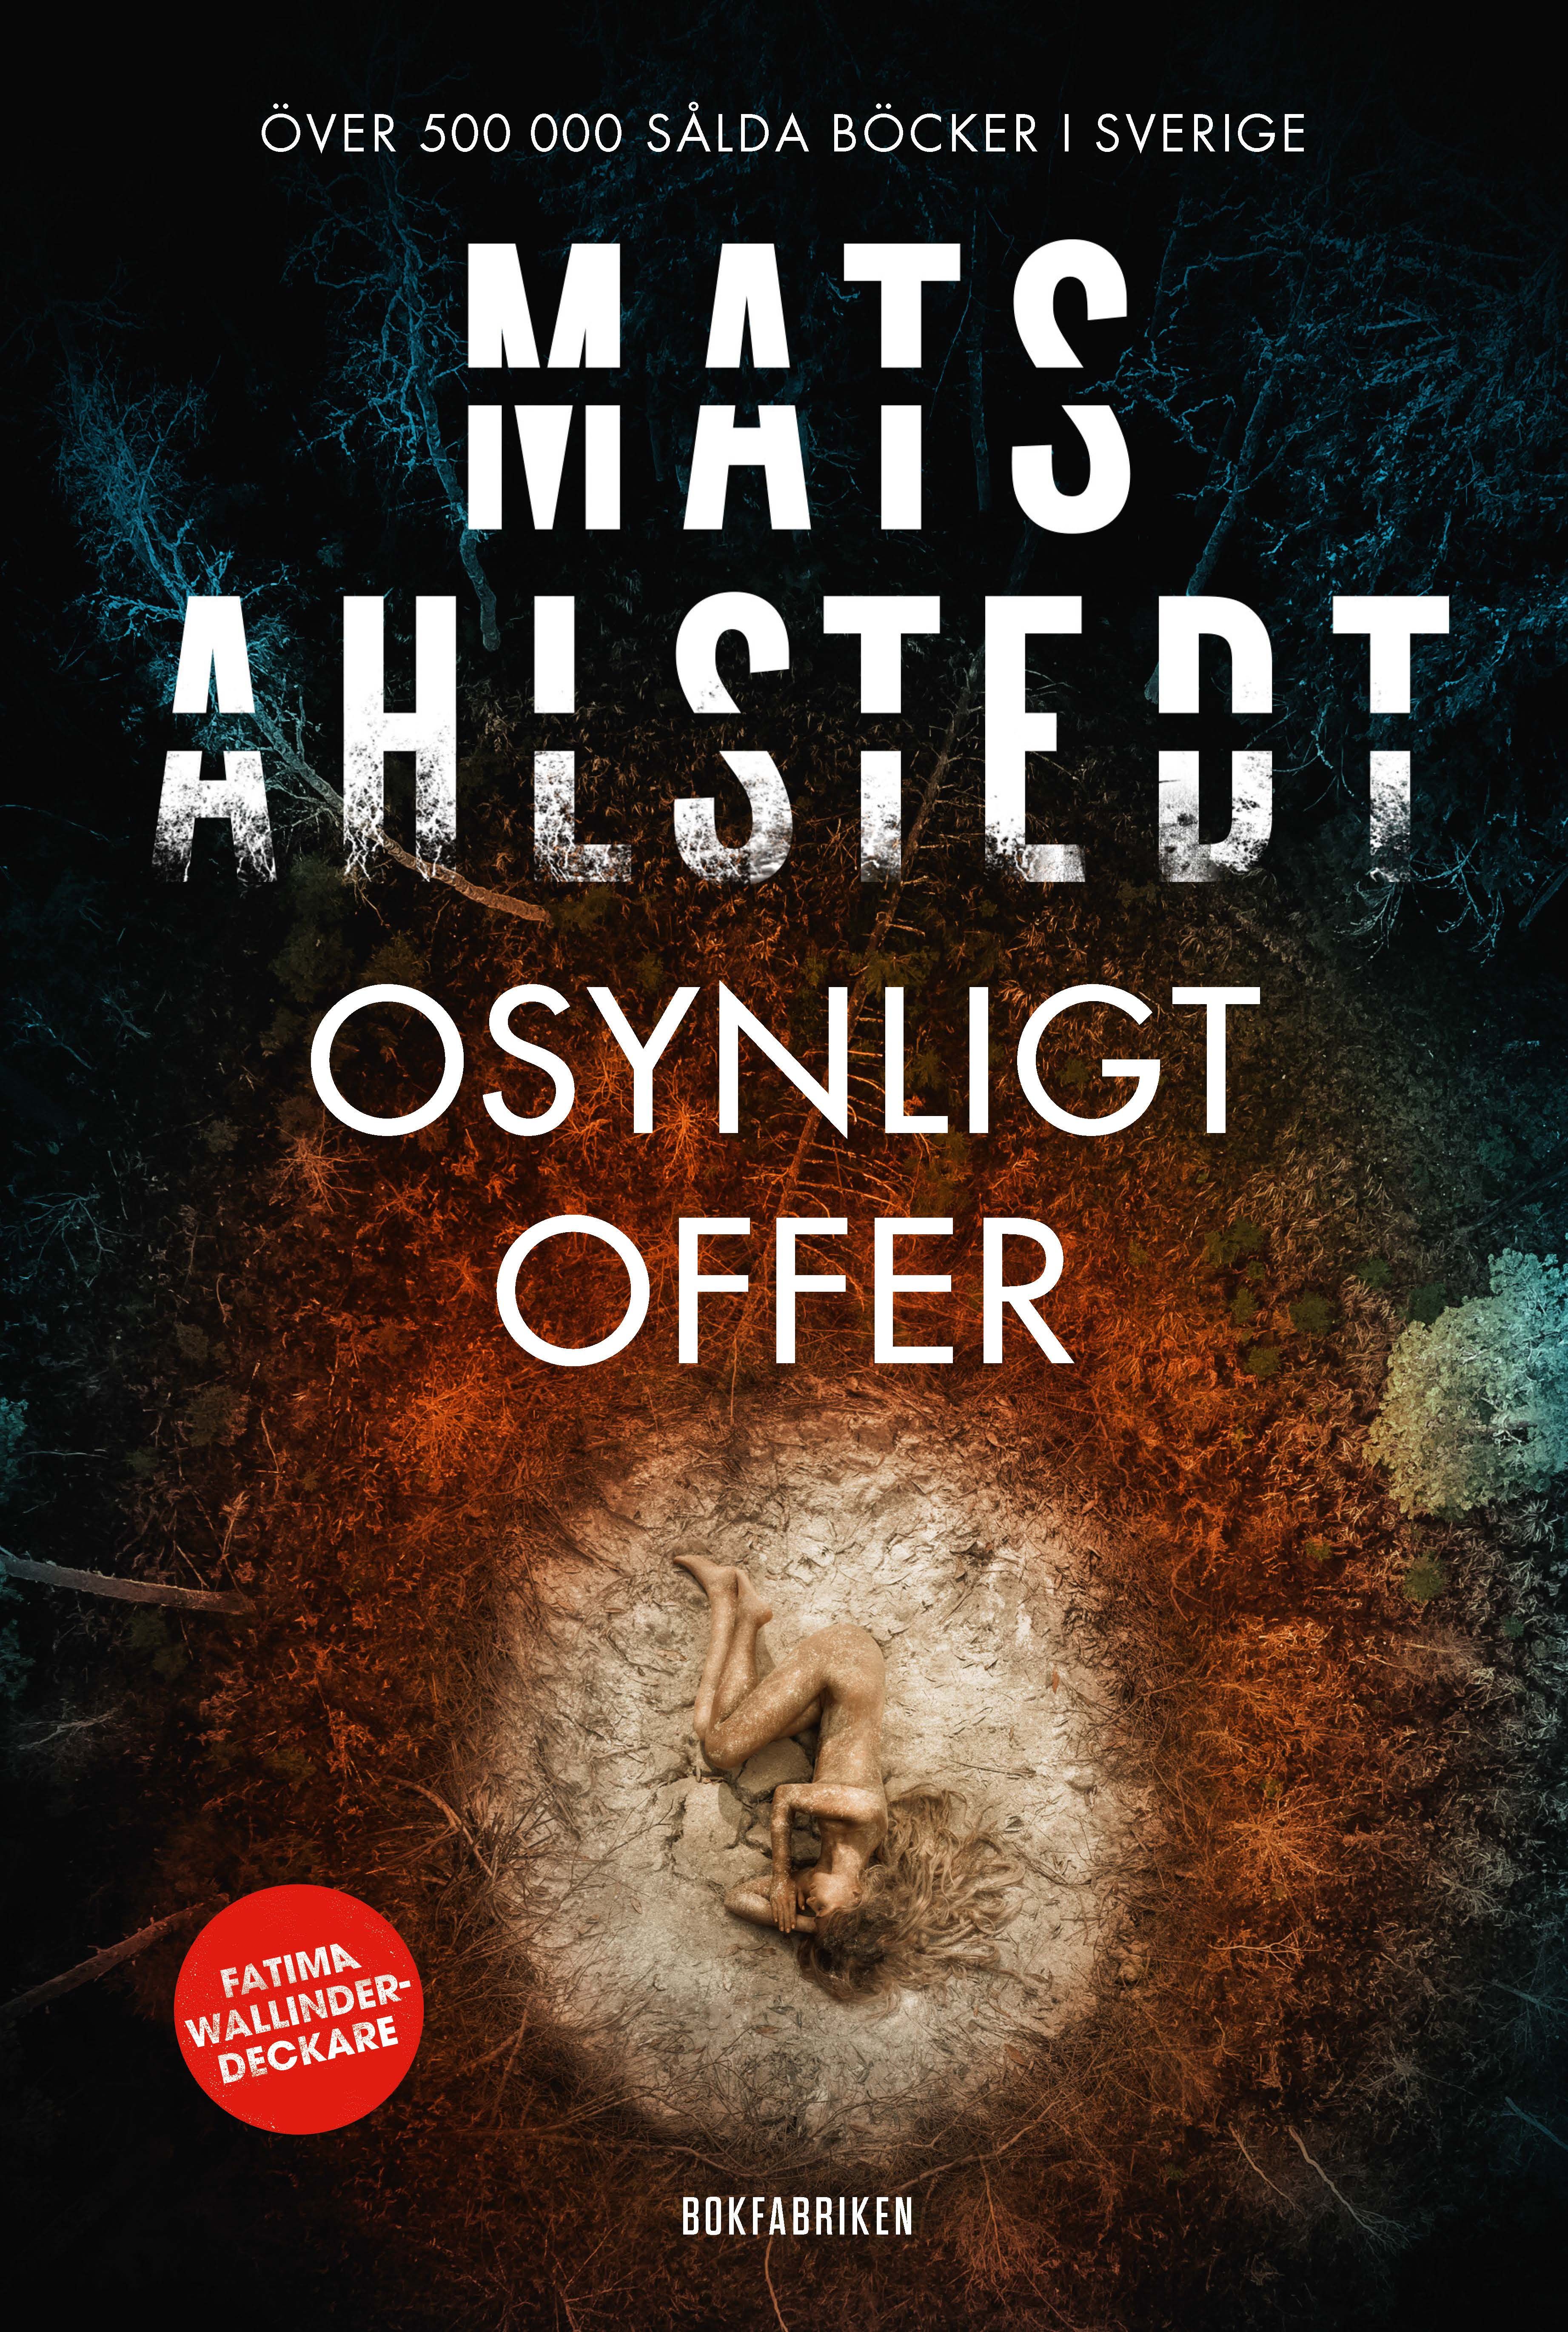 Osynligt offer, e-bok av Mats Ahlstedt